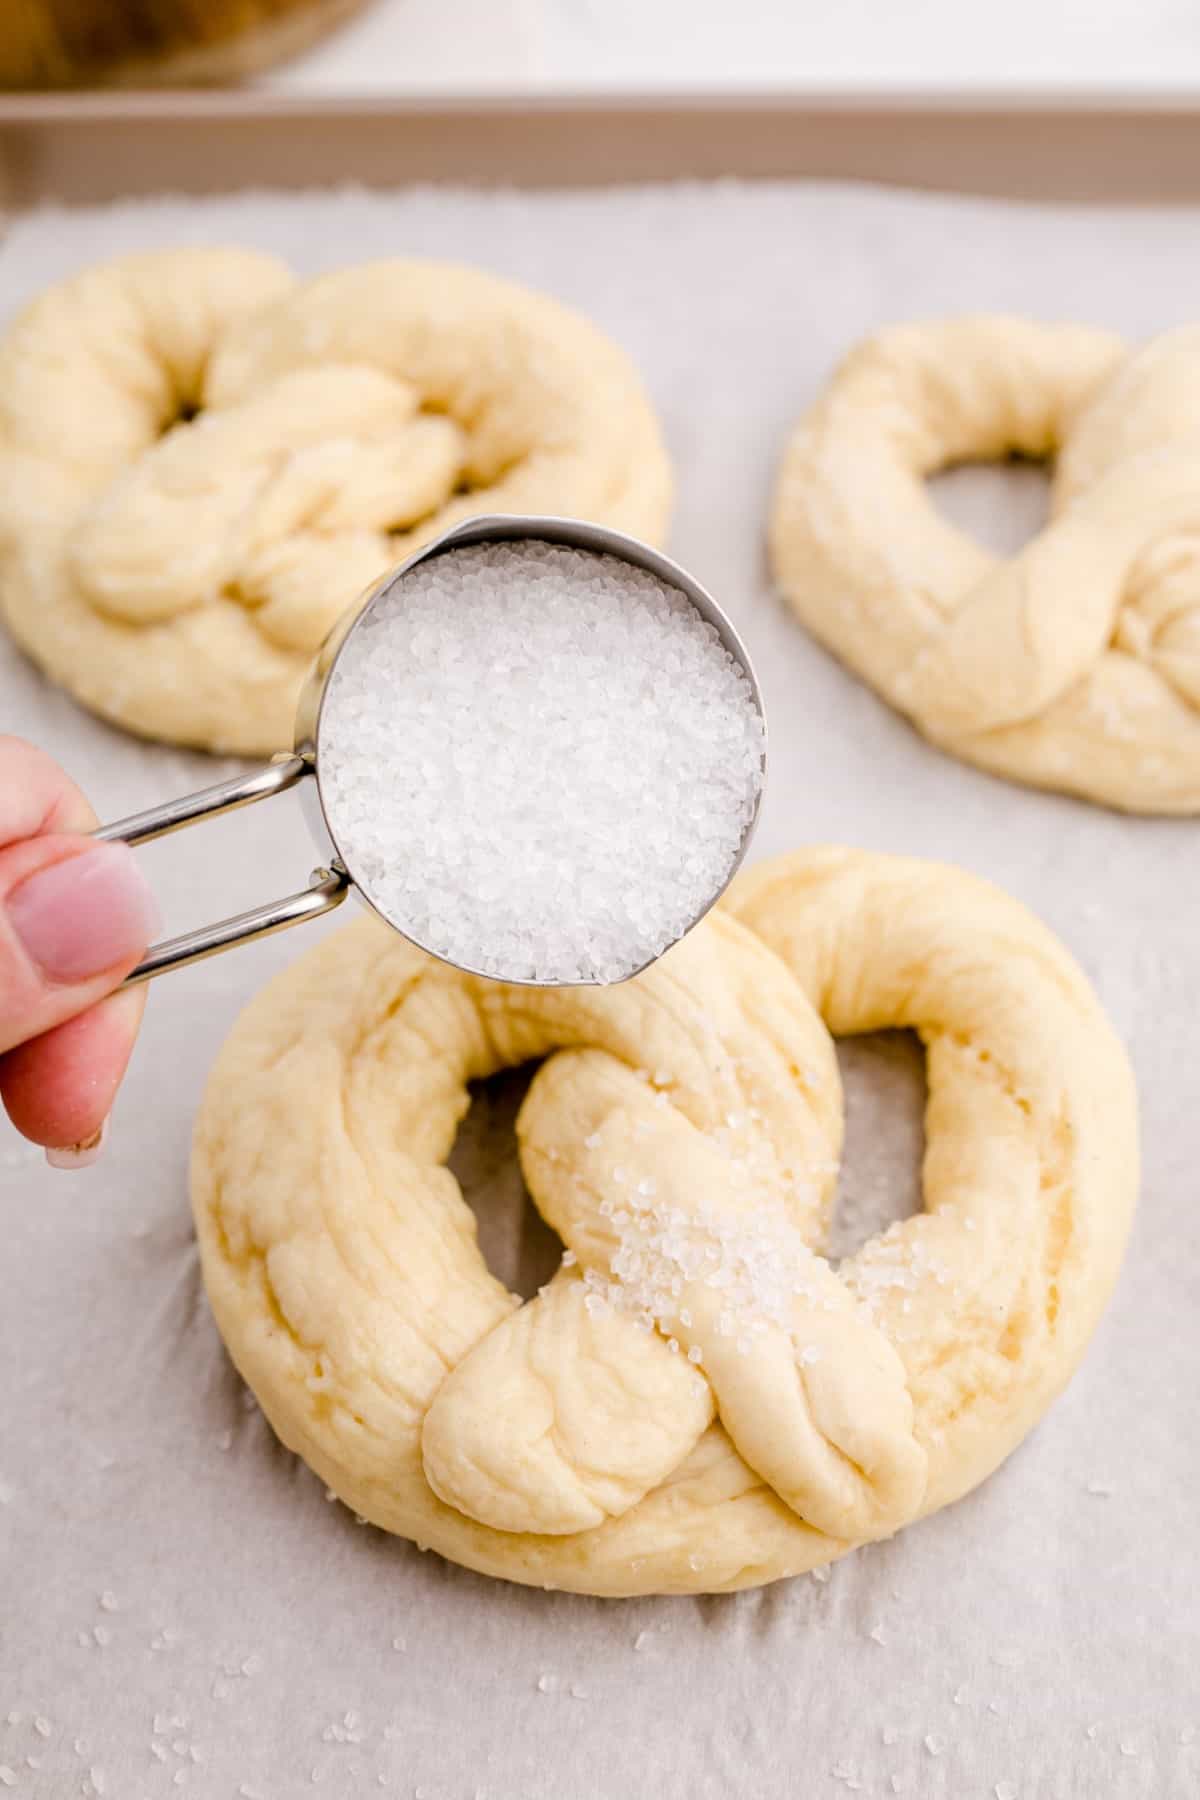 Sprinkling Kosher salt onto a soft pretzel before baking